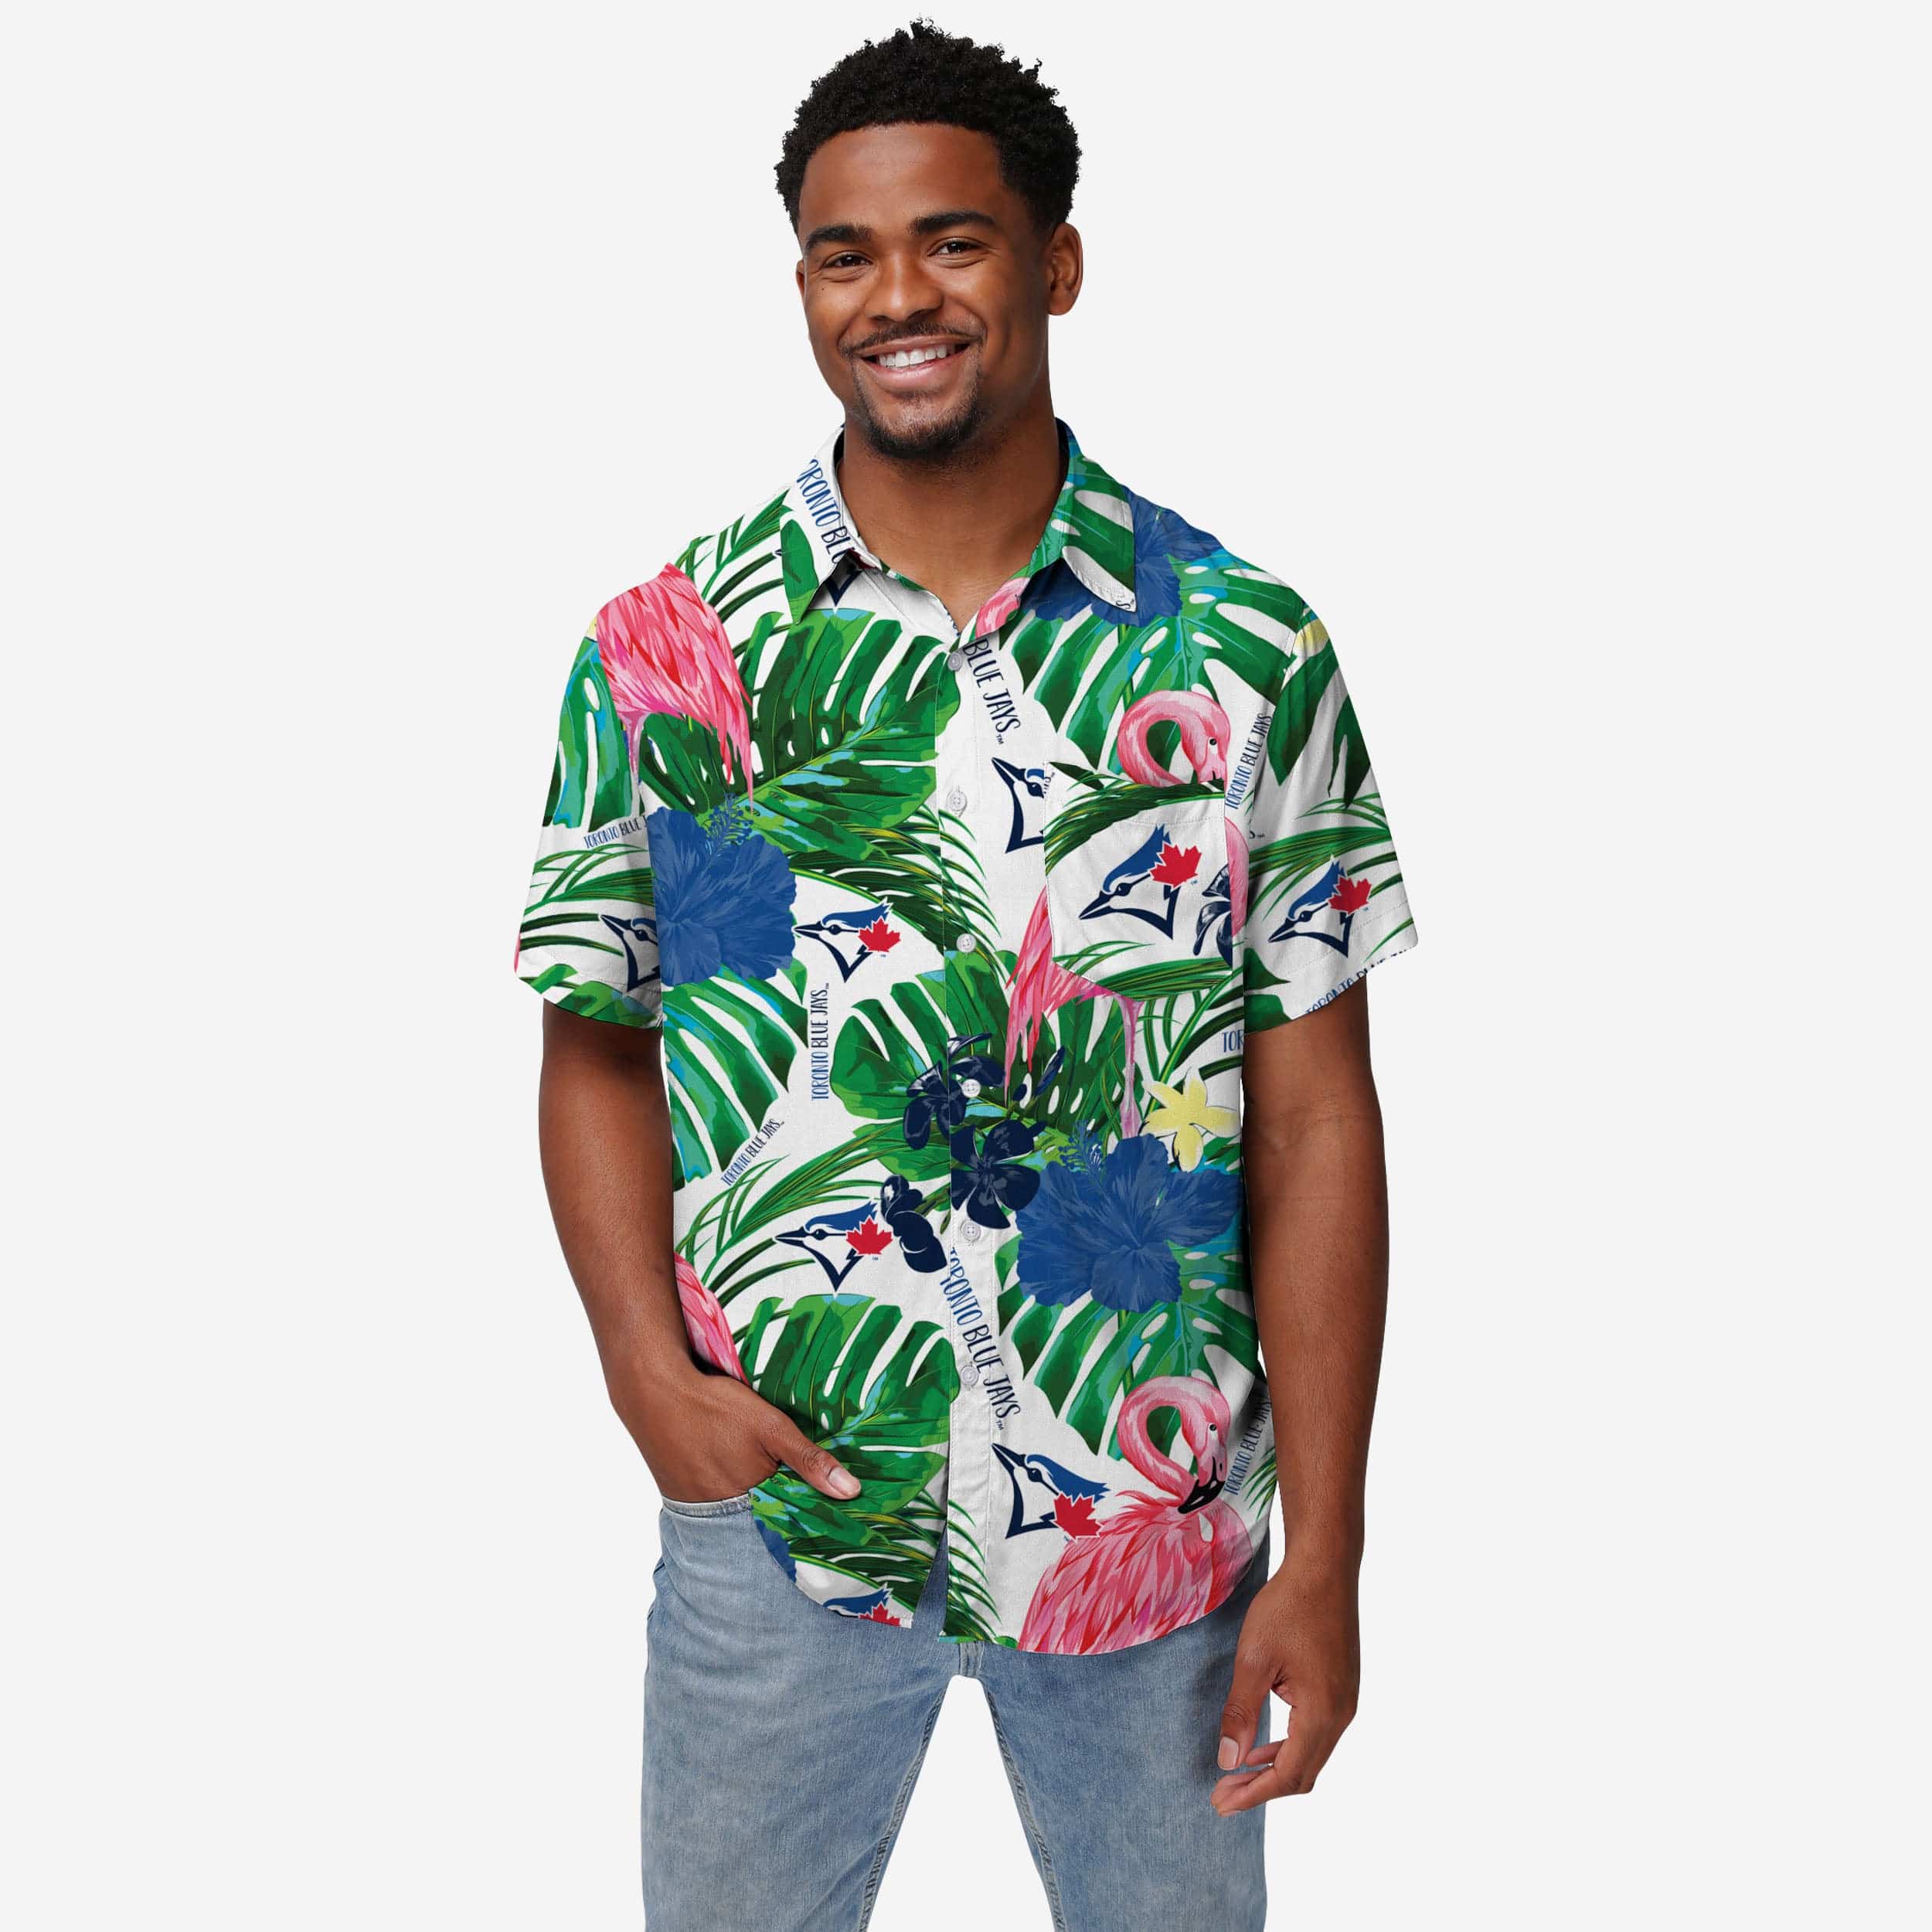 Toronto Blue Jays MLB Flower Hawaiian Shirt Special Gift For Men